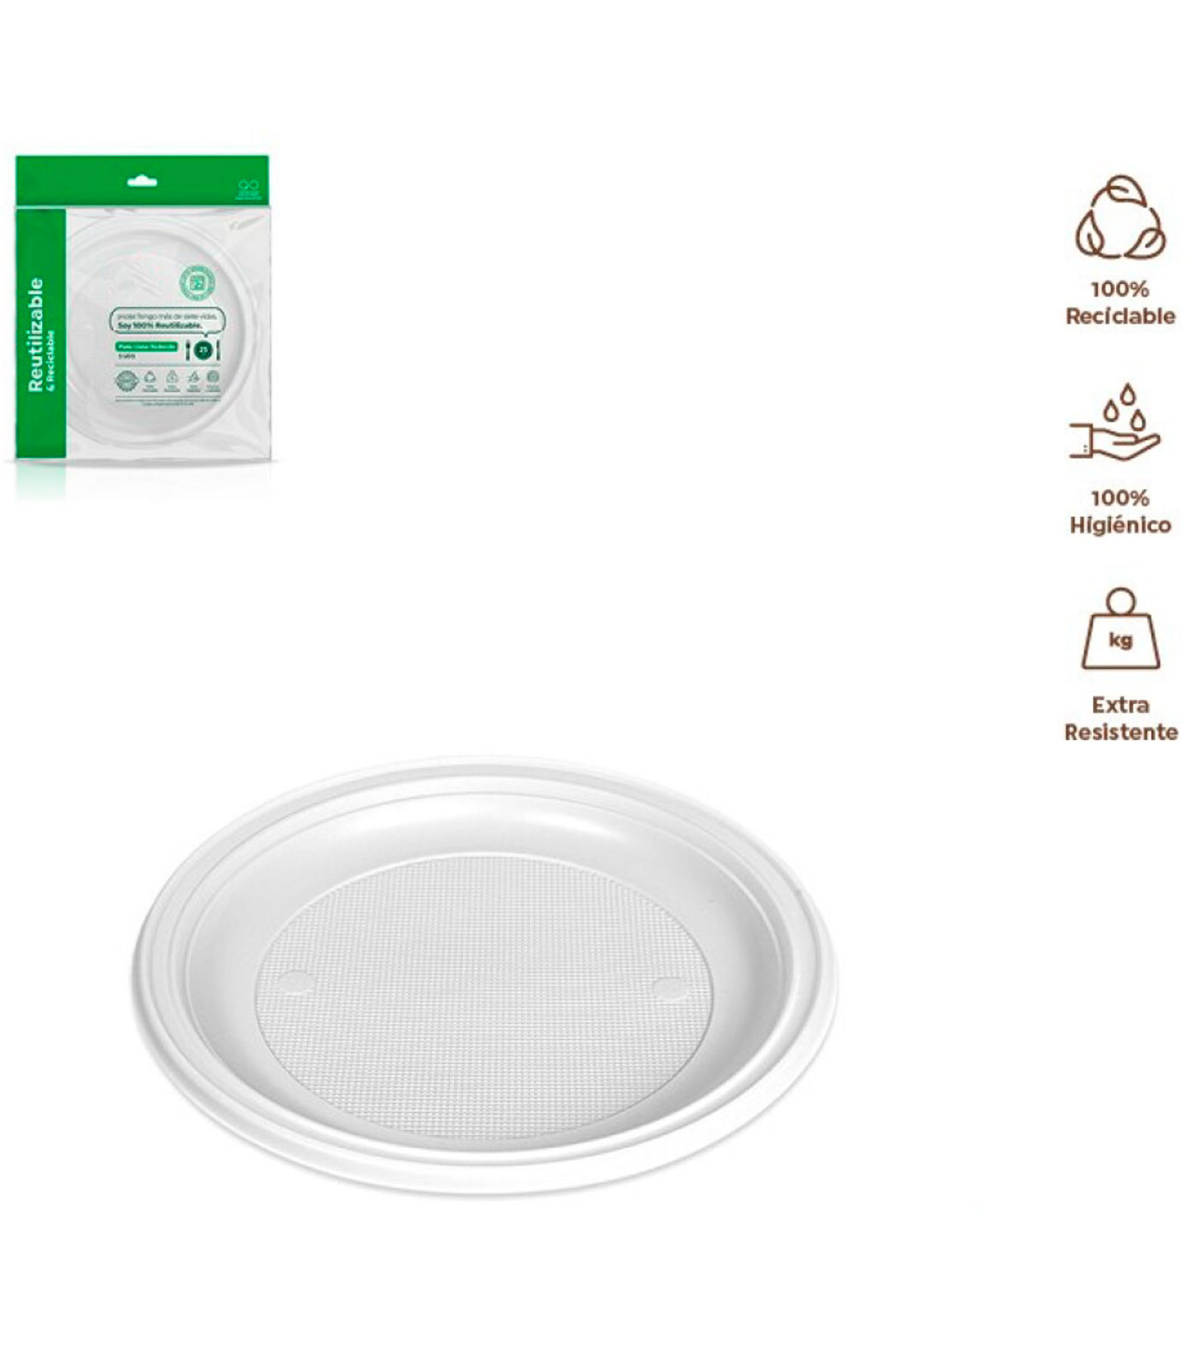 Tradineur - Pack de 5 platos llanos redondos reutilizables de plástico,  100% reciclables, extra resistentes, higiénicos, apilabl